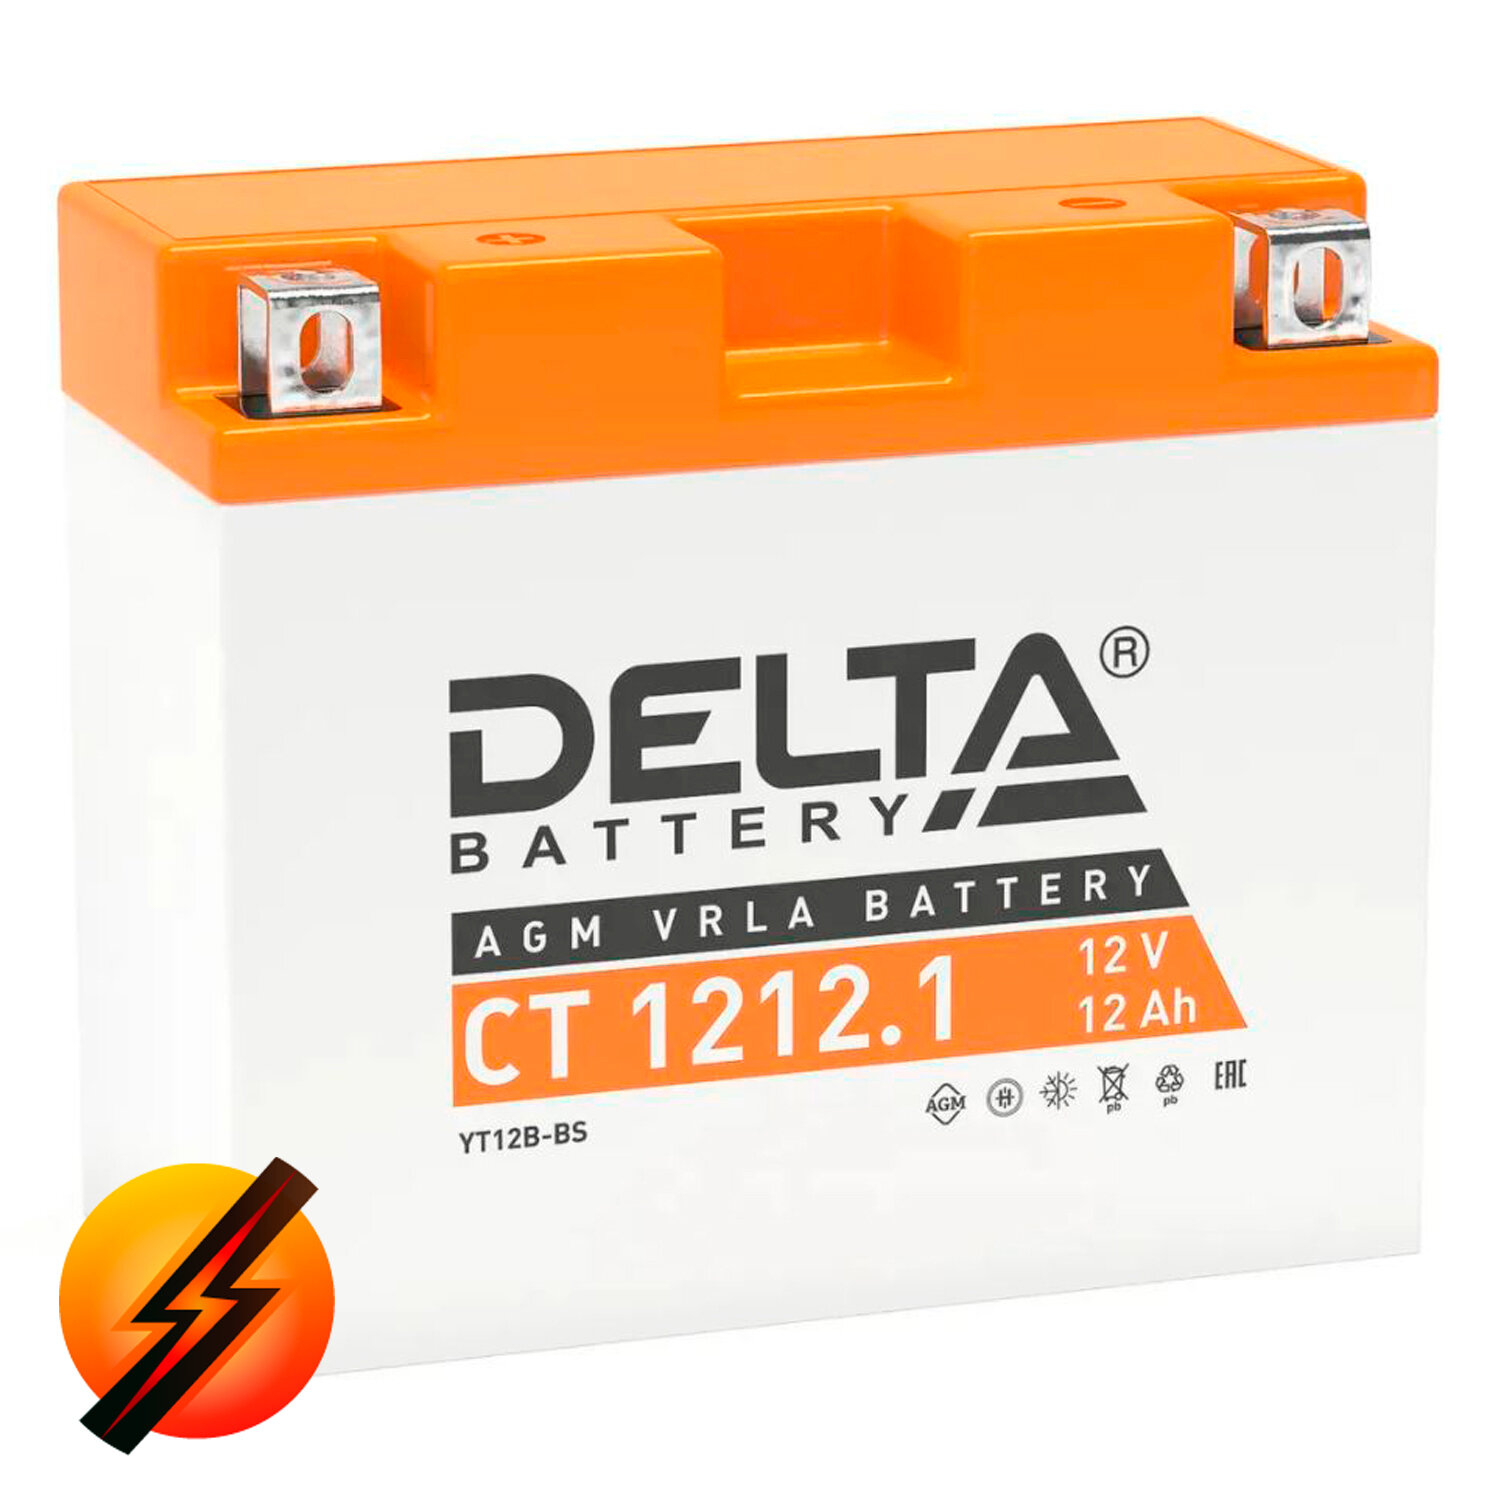 Аккумулятор мотоциклетный Delta CT1212.1 YT12B-BS 12V 12Ah AGM(залит и готов к применению)